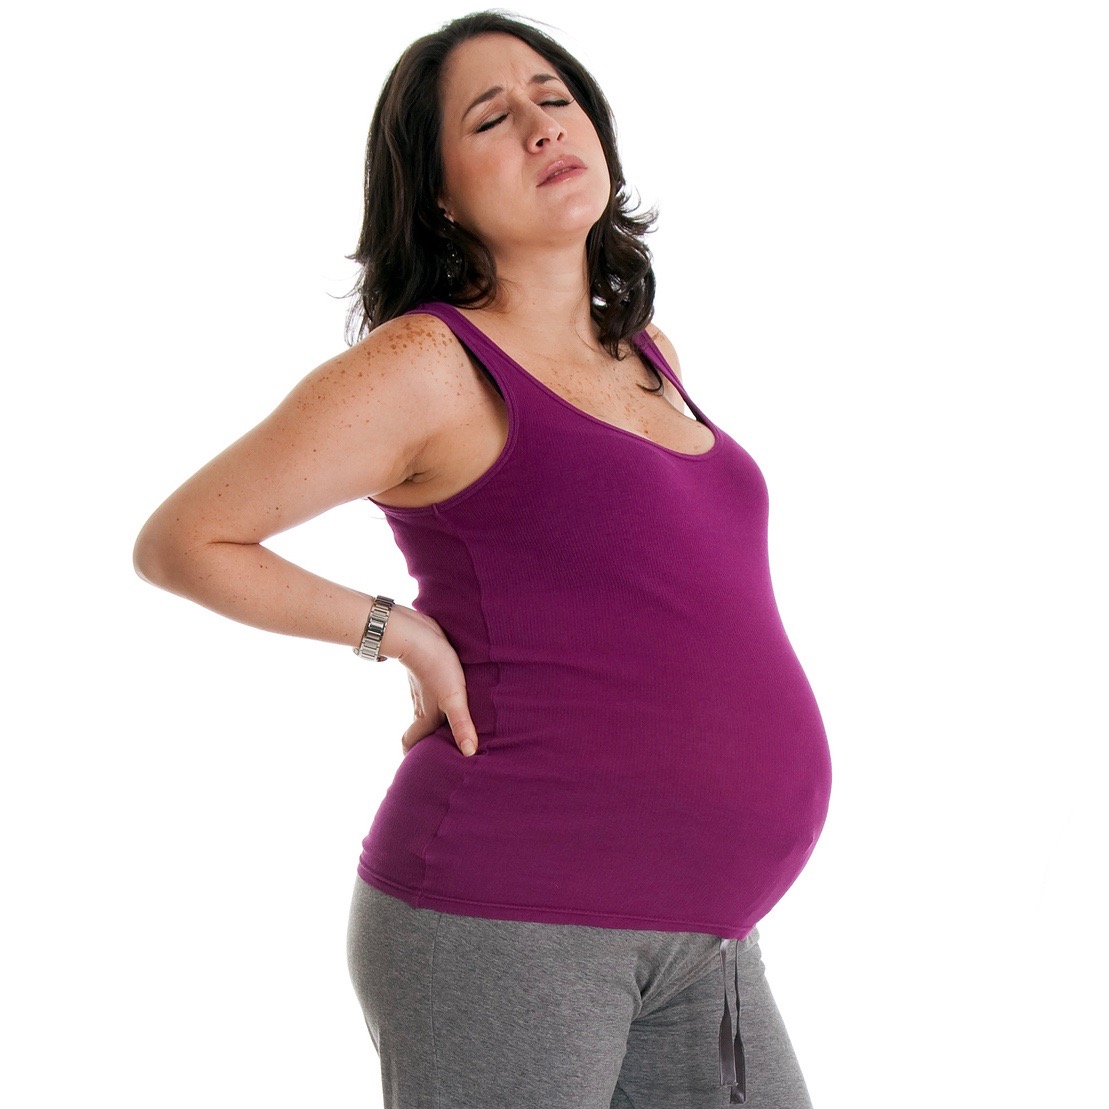 Mujer-embarazada-con-incomodidades